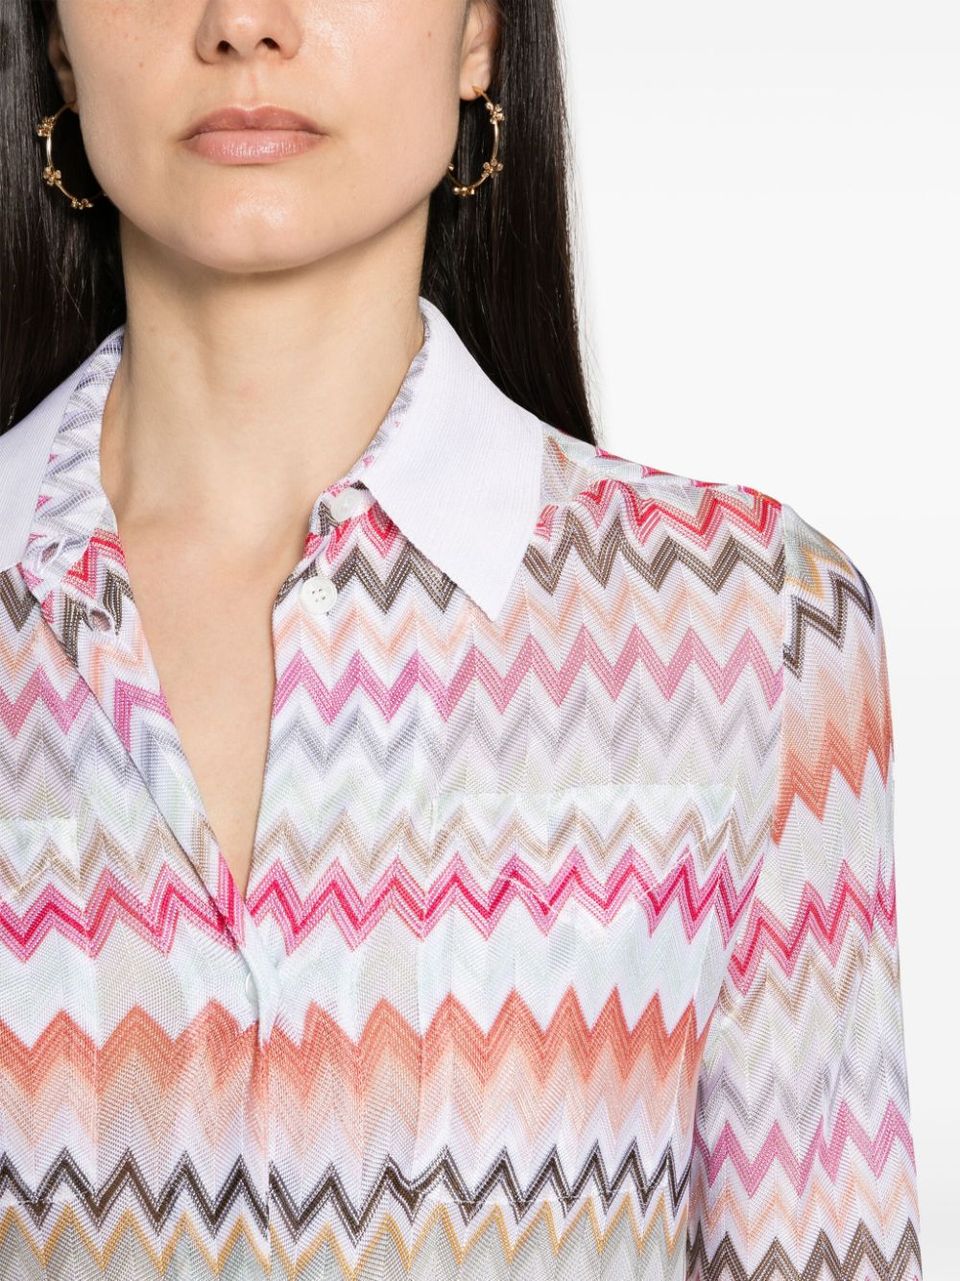 Zigzag pattern shirt